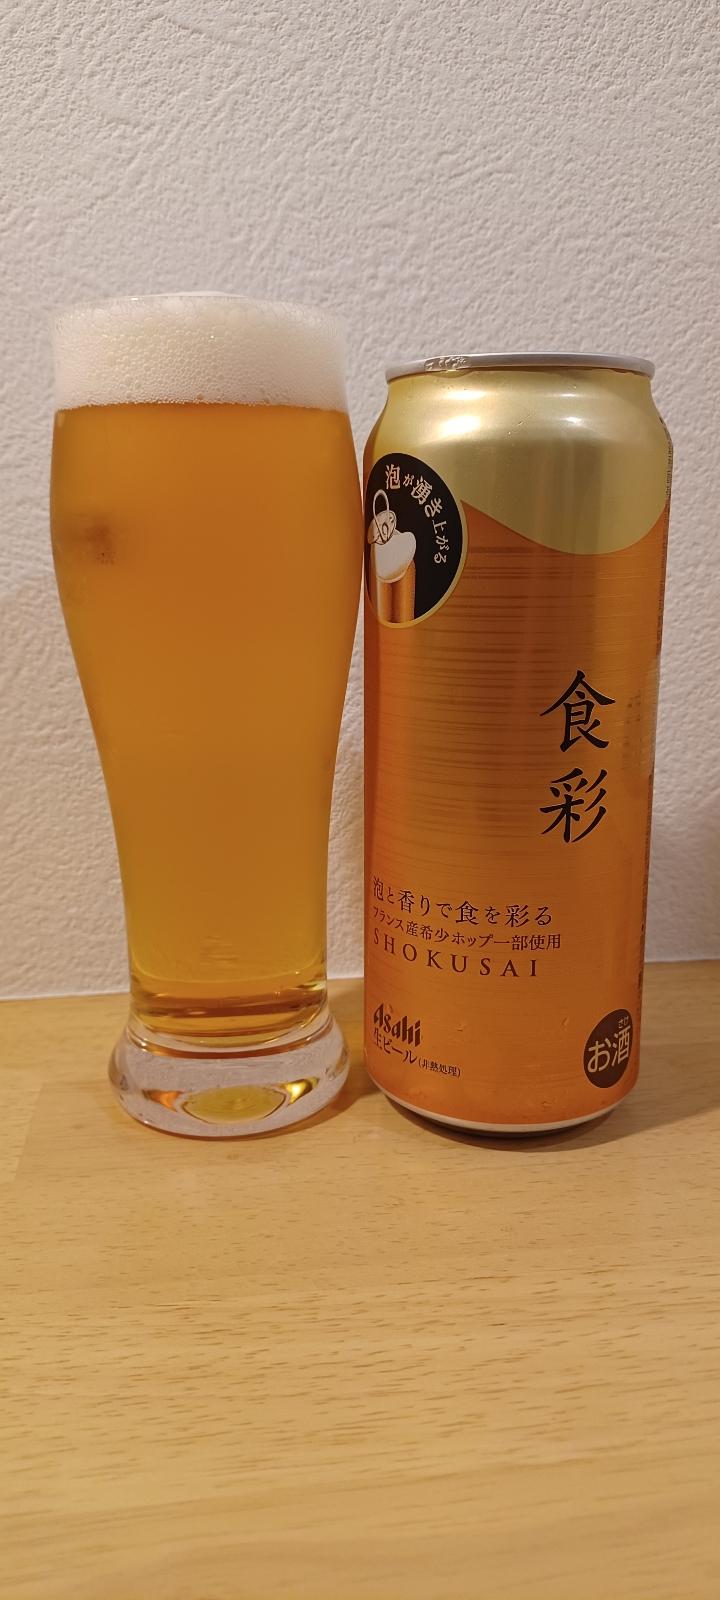 Asahi Shokusai